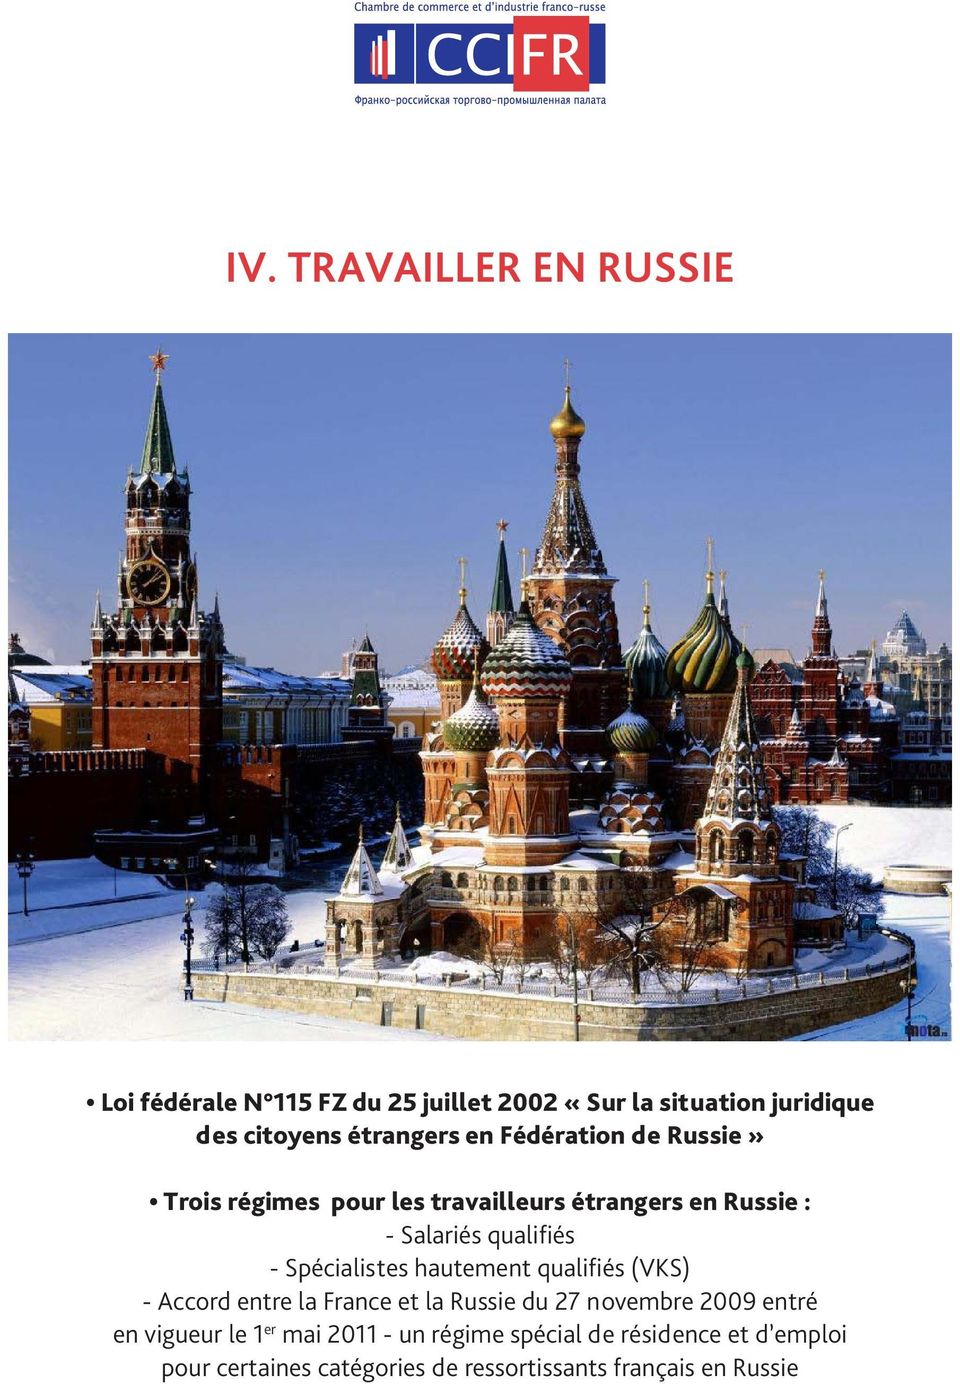 Spécialistes hautement qualifiés (VKS) - Accord entre la France et la Russie du 27 novembre 2009 entré en vigueur